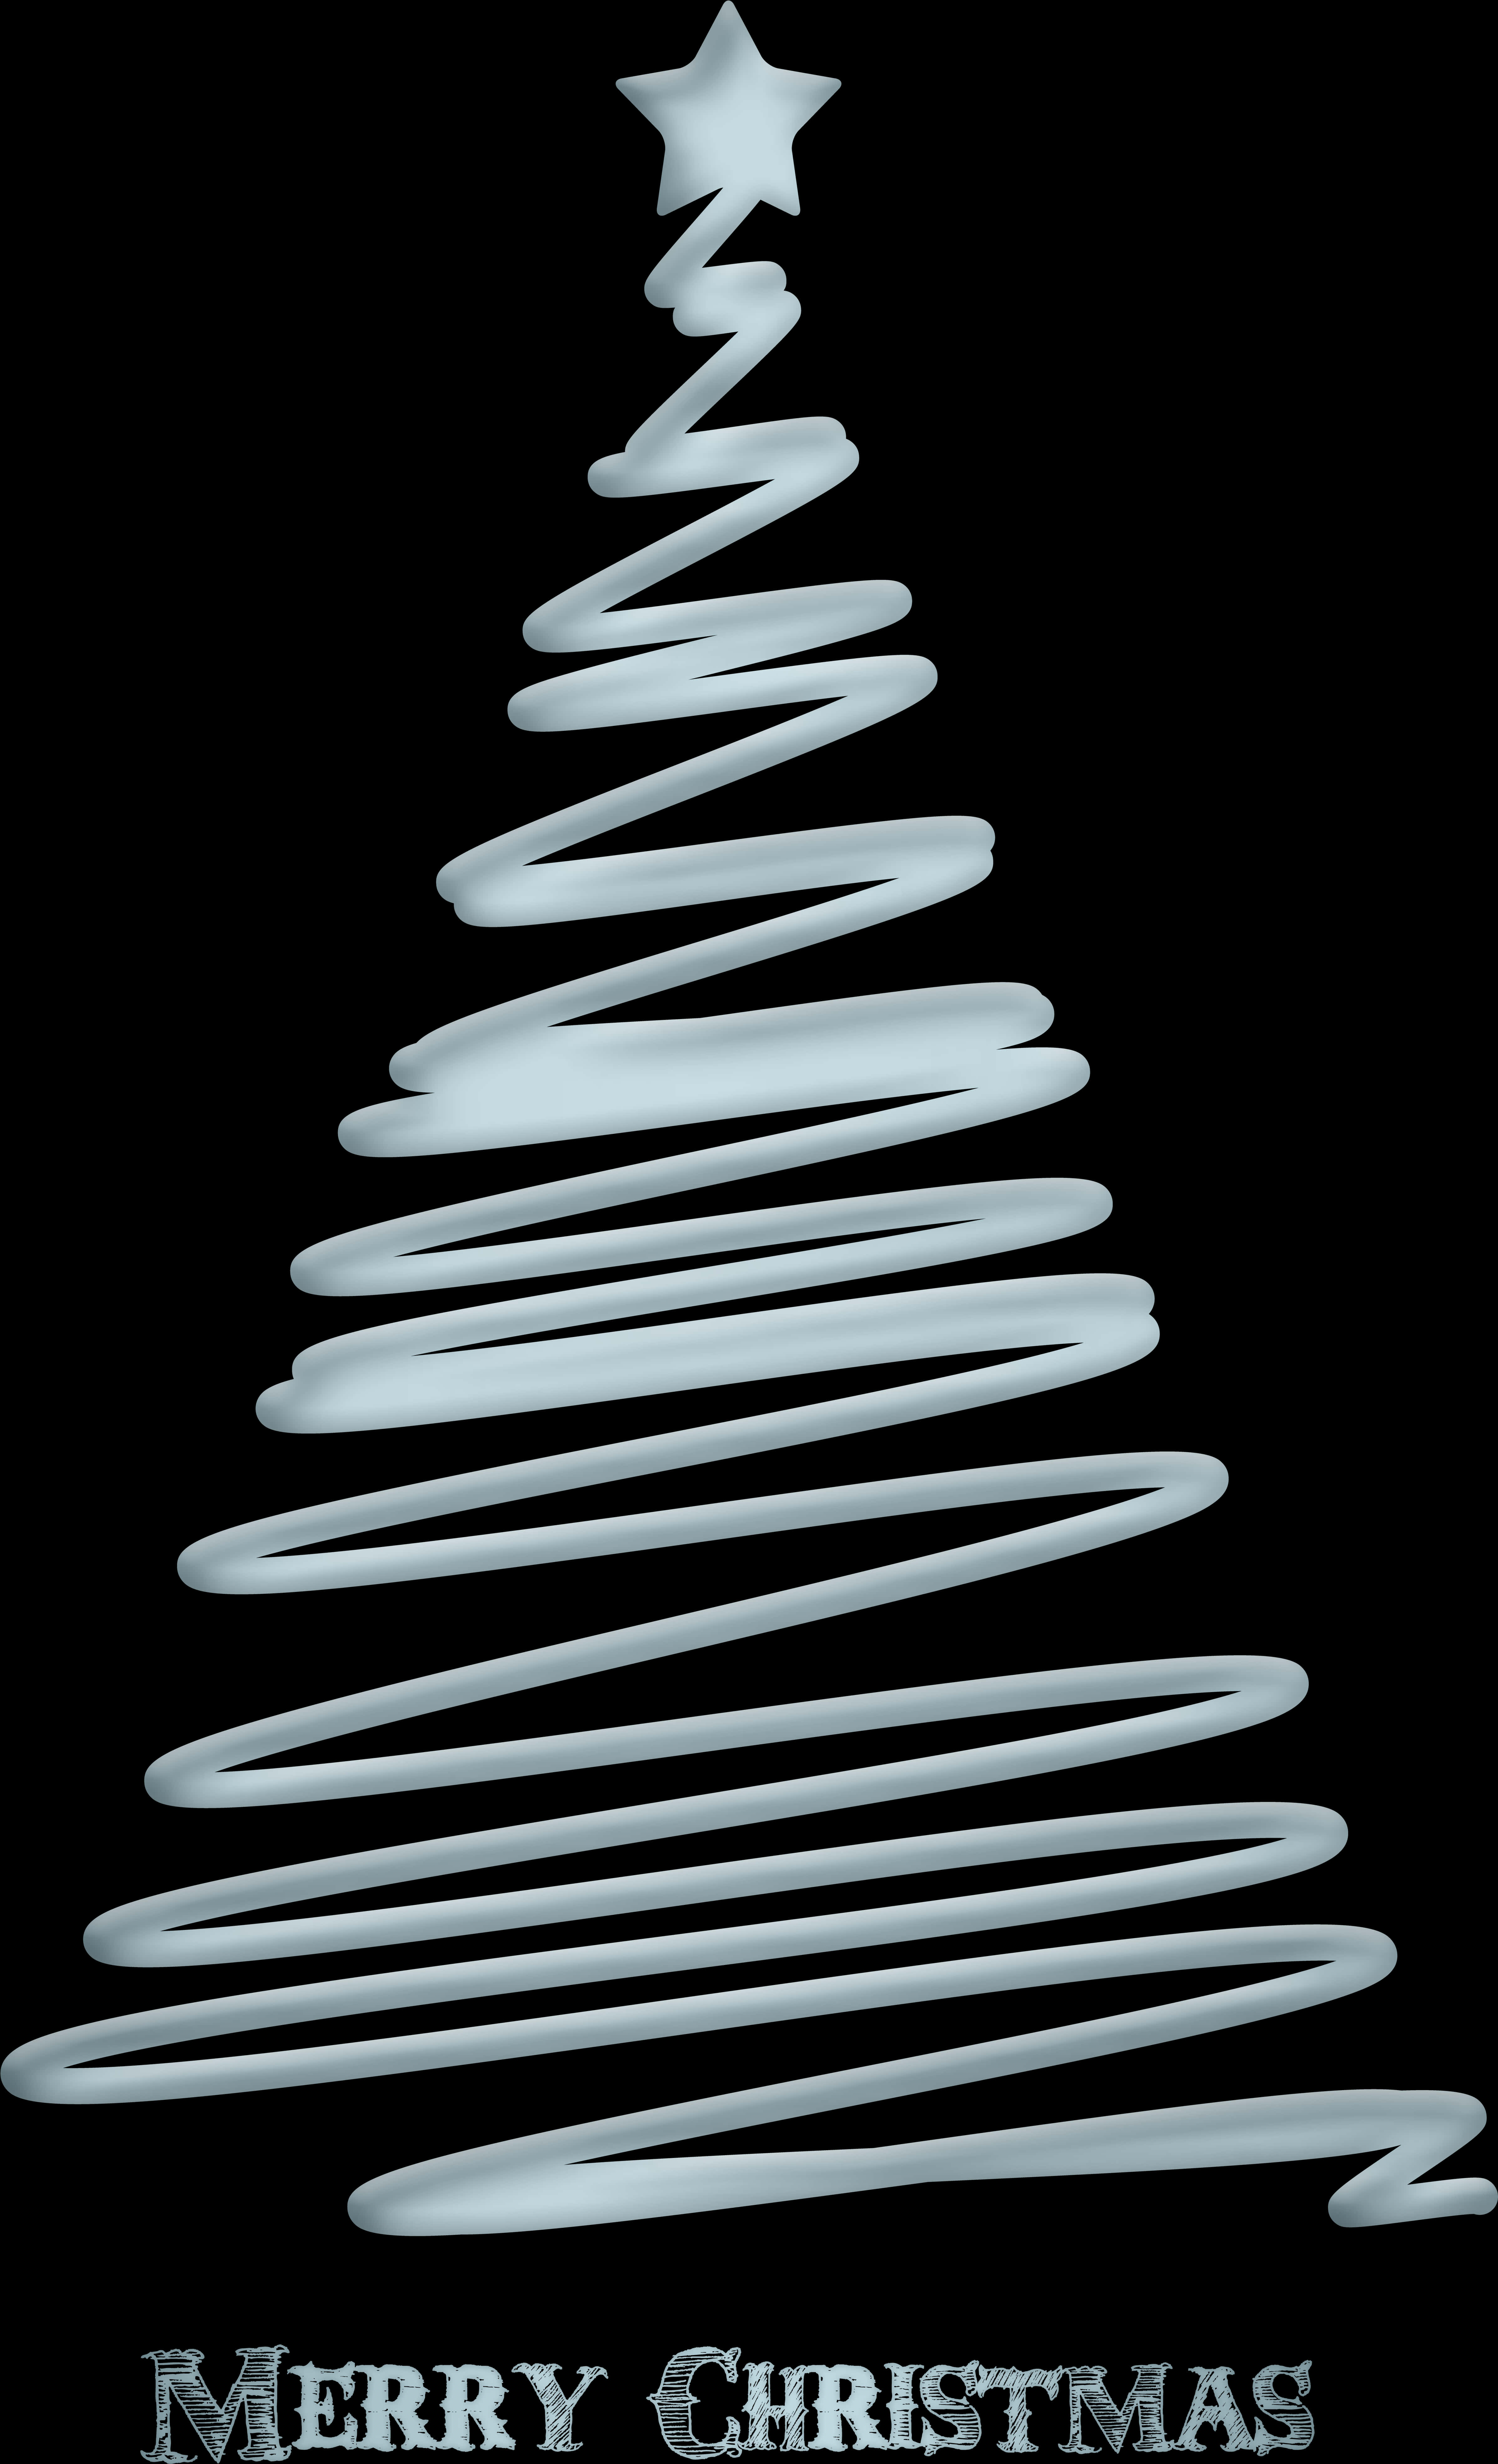 Abstract Christmas Tree Design